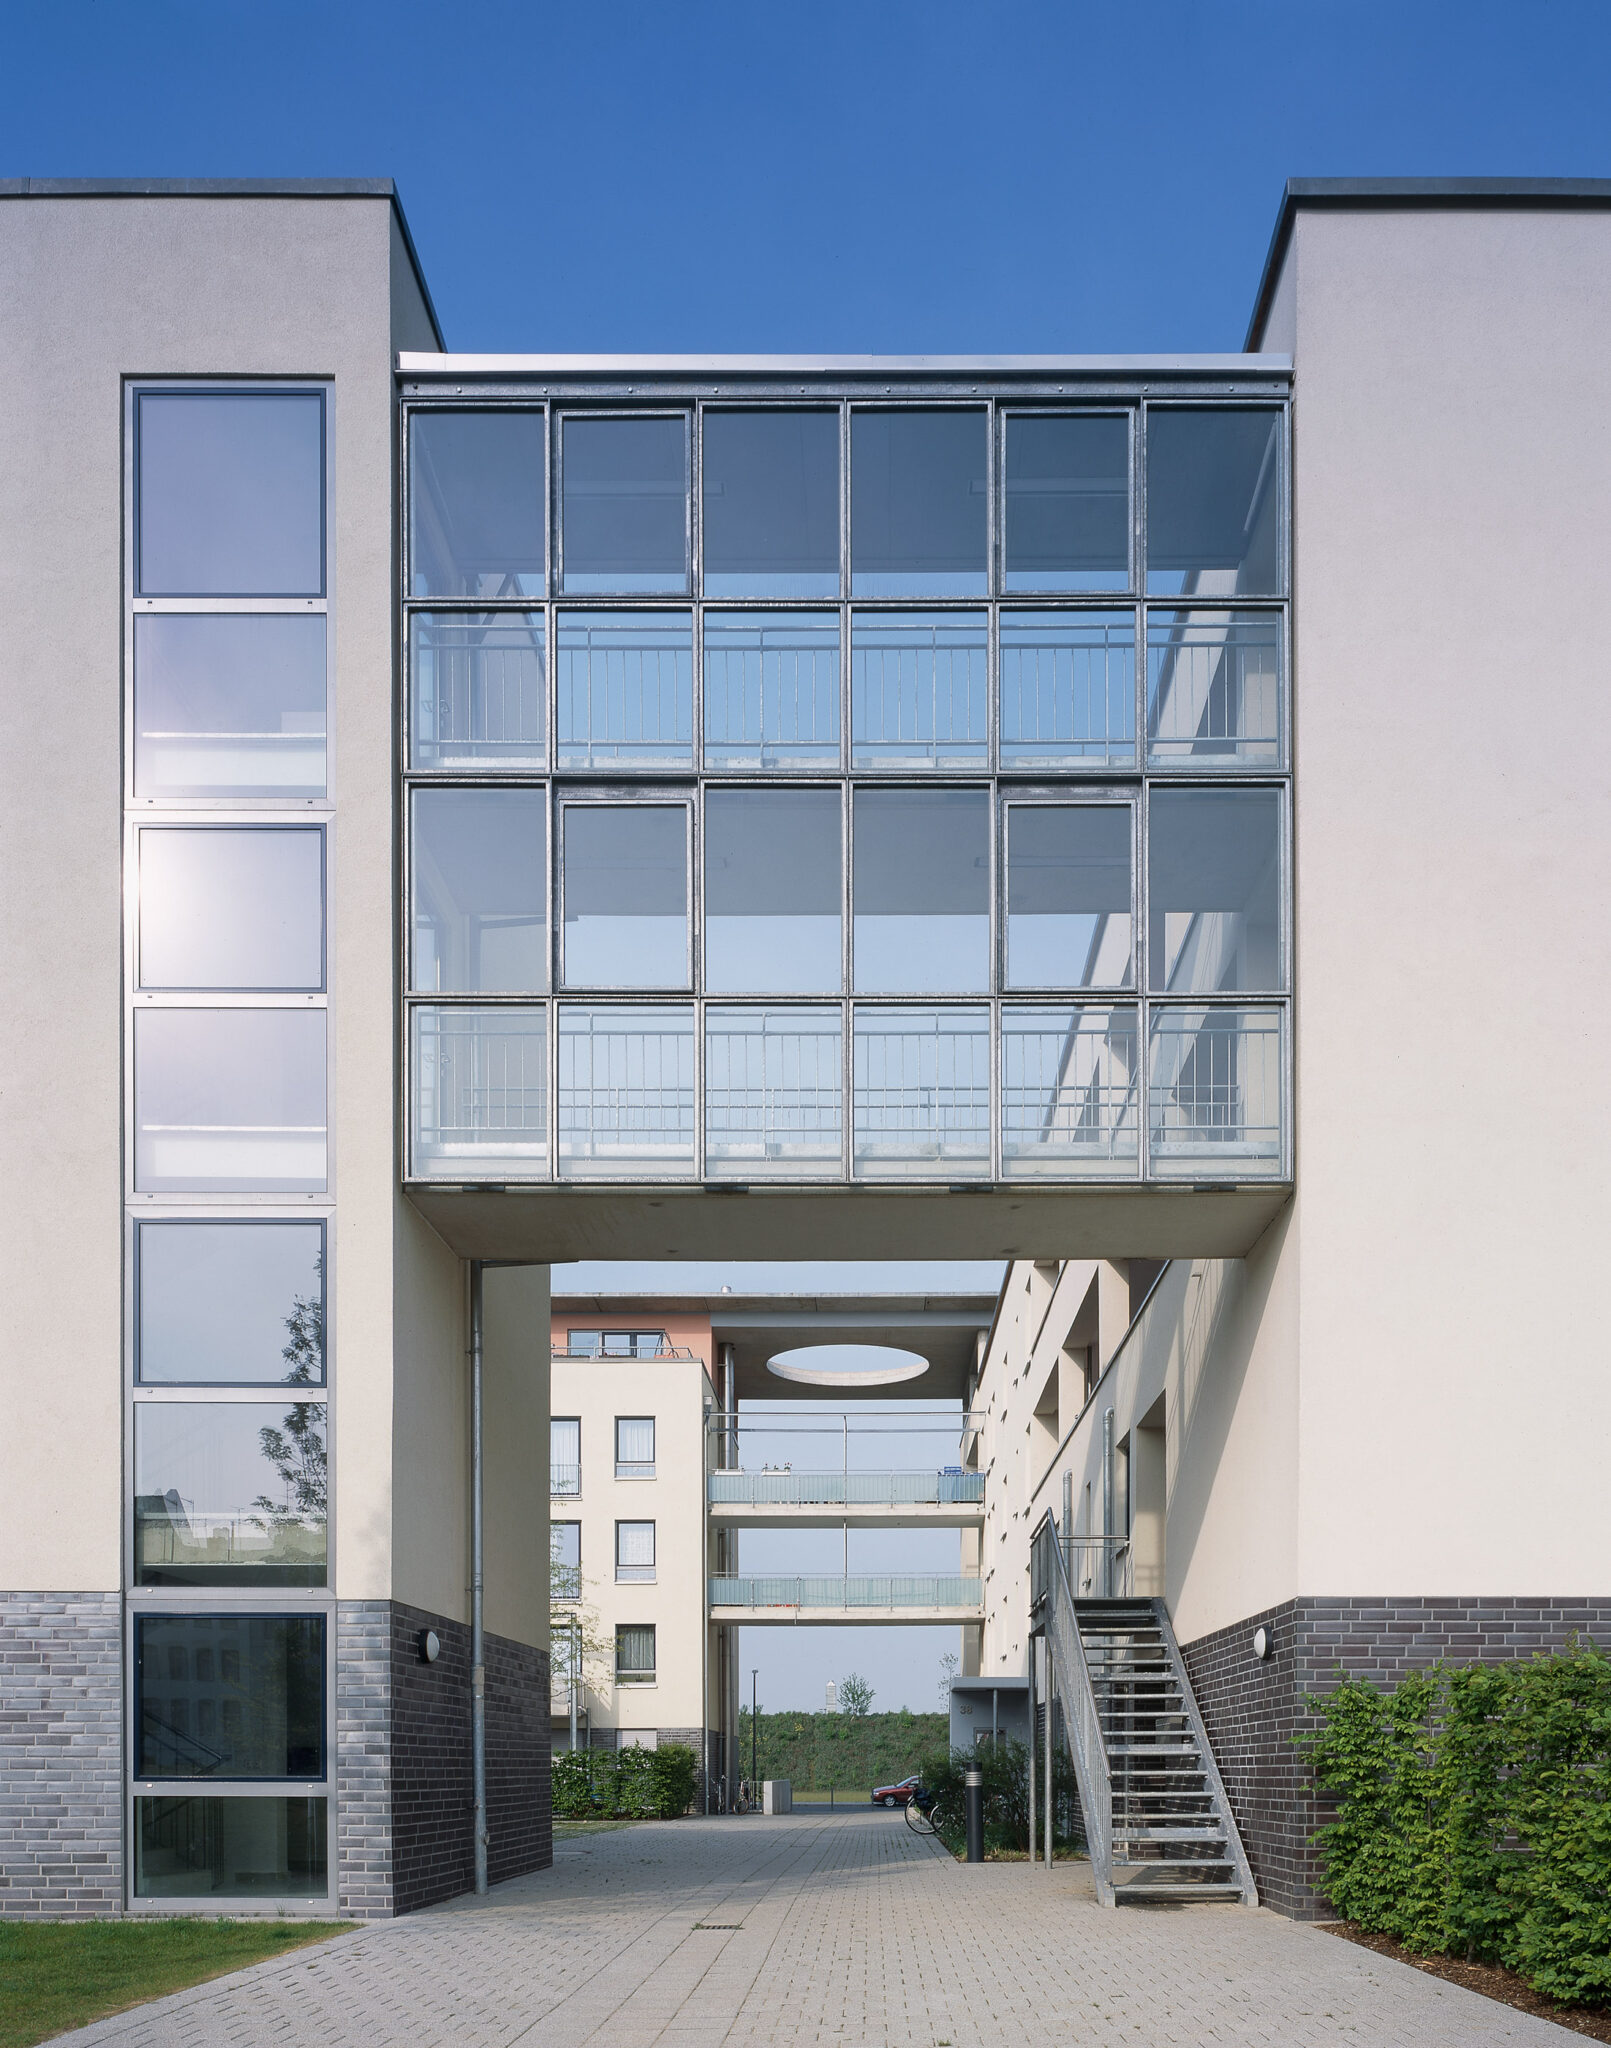 Architekten:
Prof. Coersmeier Architekten, Köln

Projekt: Wohnanlage Liebigstraße, Köln